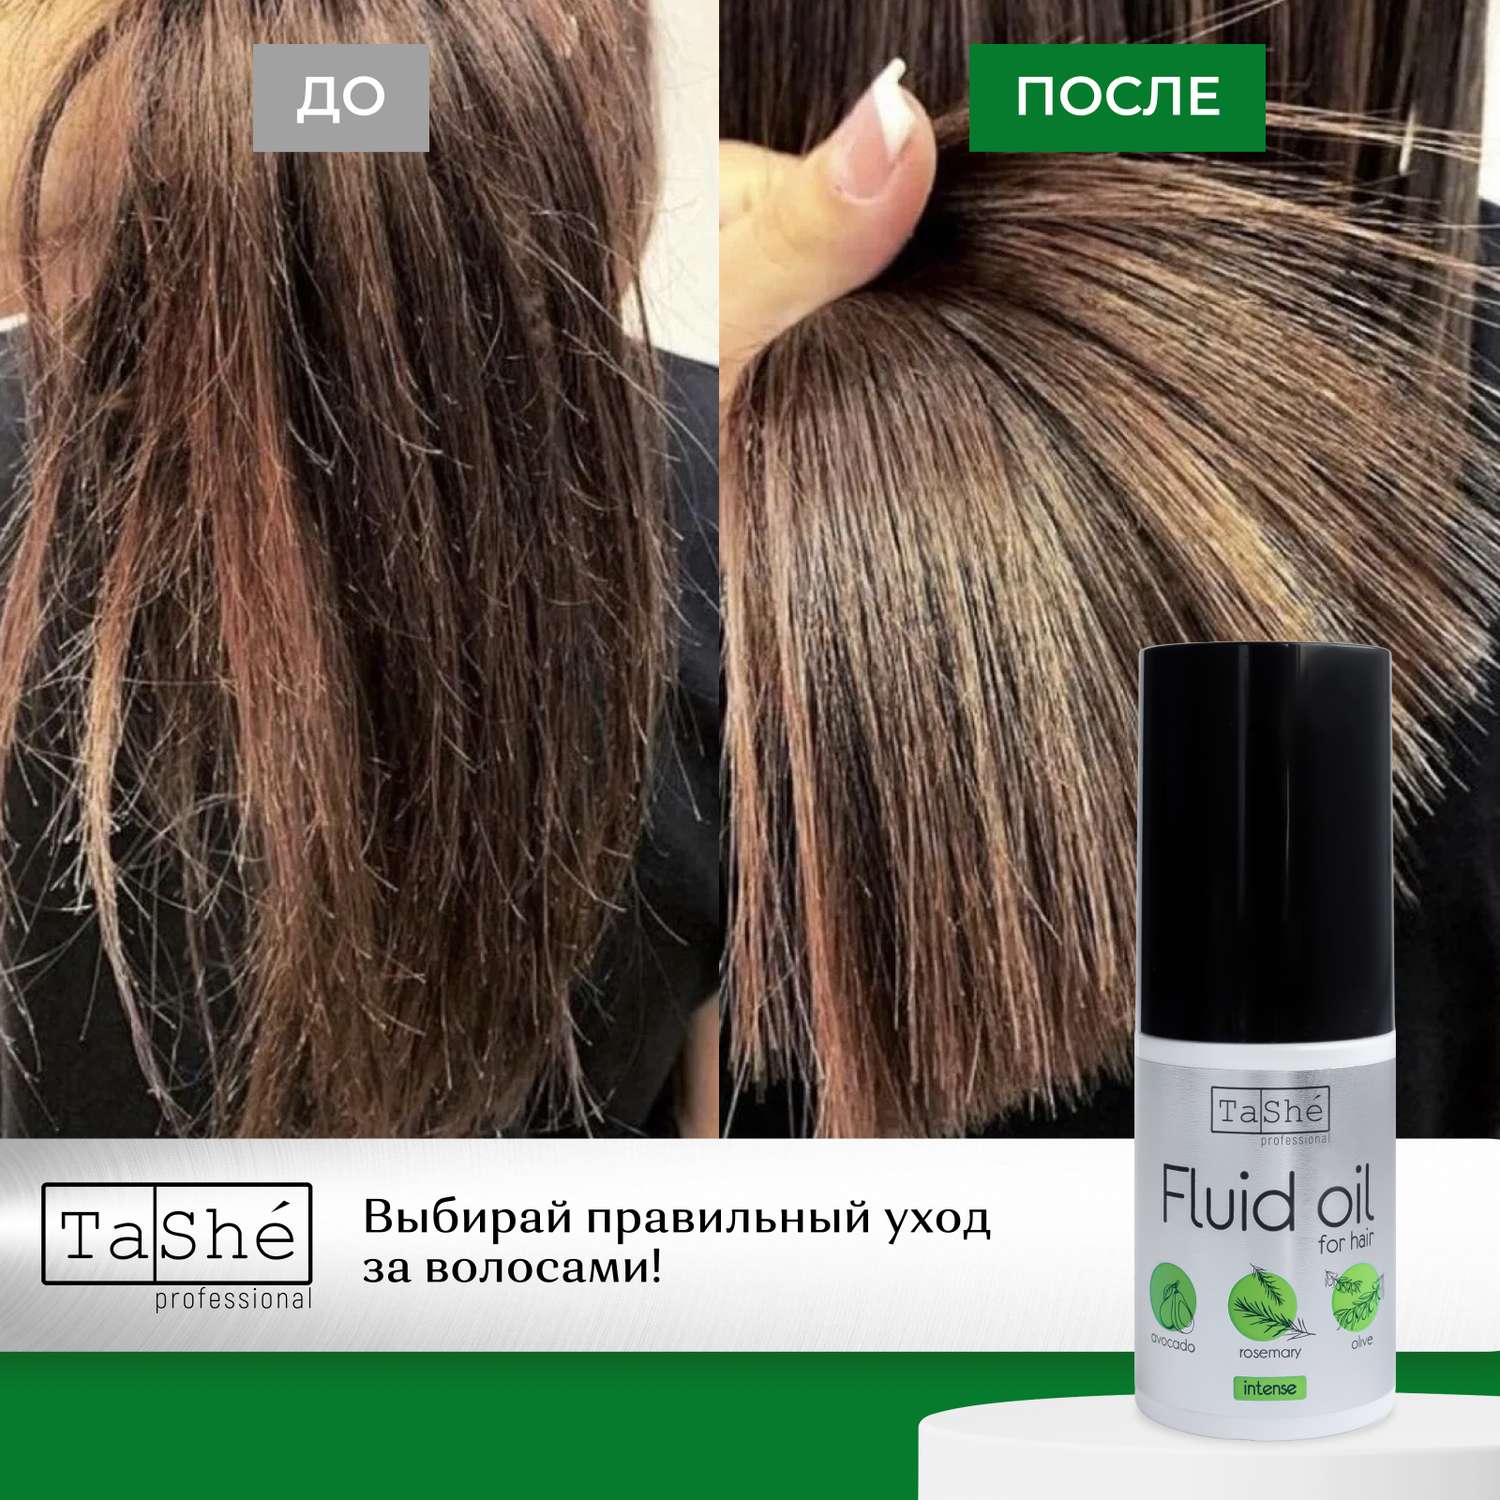 Масло-флюид для волос Tashe Professional против секущихся кончиков с авокадо - фото 4